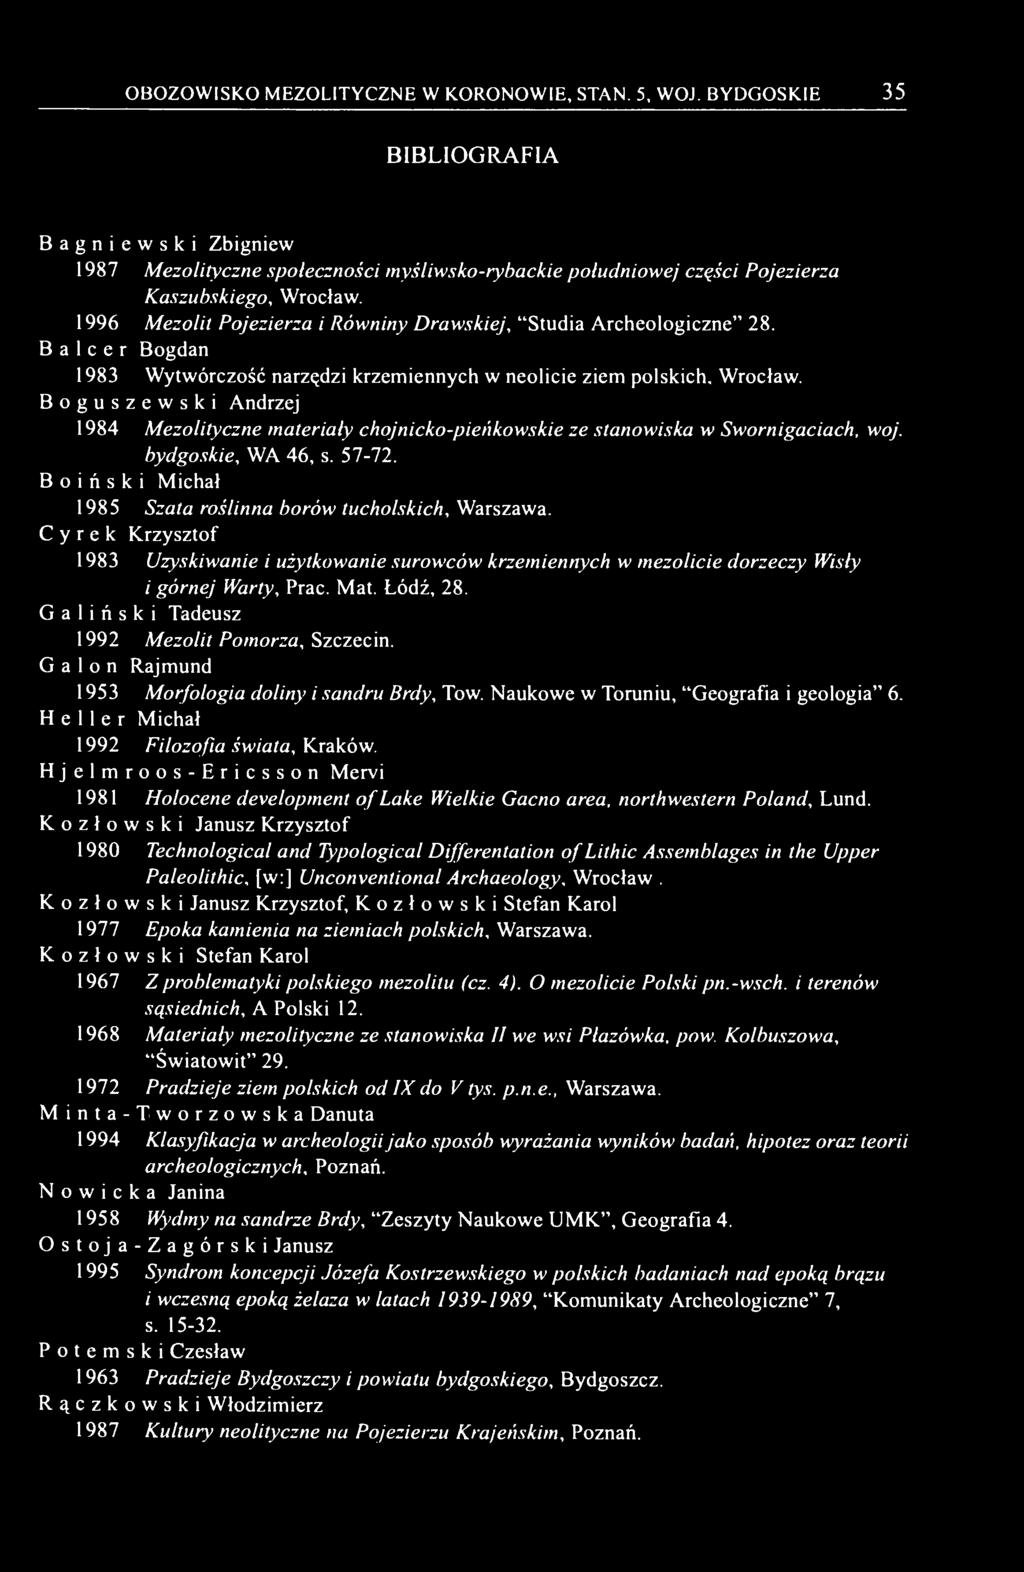 Boguszewski Andrzej 1984 Mezolityczne materiały chojnicko-pieńkowskie ze stanowiska w Swornigaciach, woj. bydgoskie, WA 46, s. 57-72. Boiński Michał 1985 Szata roślinna borów tucholskich, Warszawa.